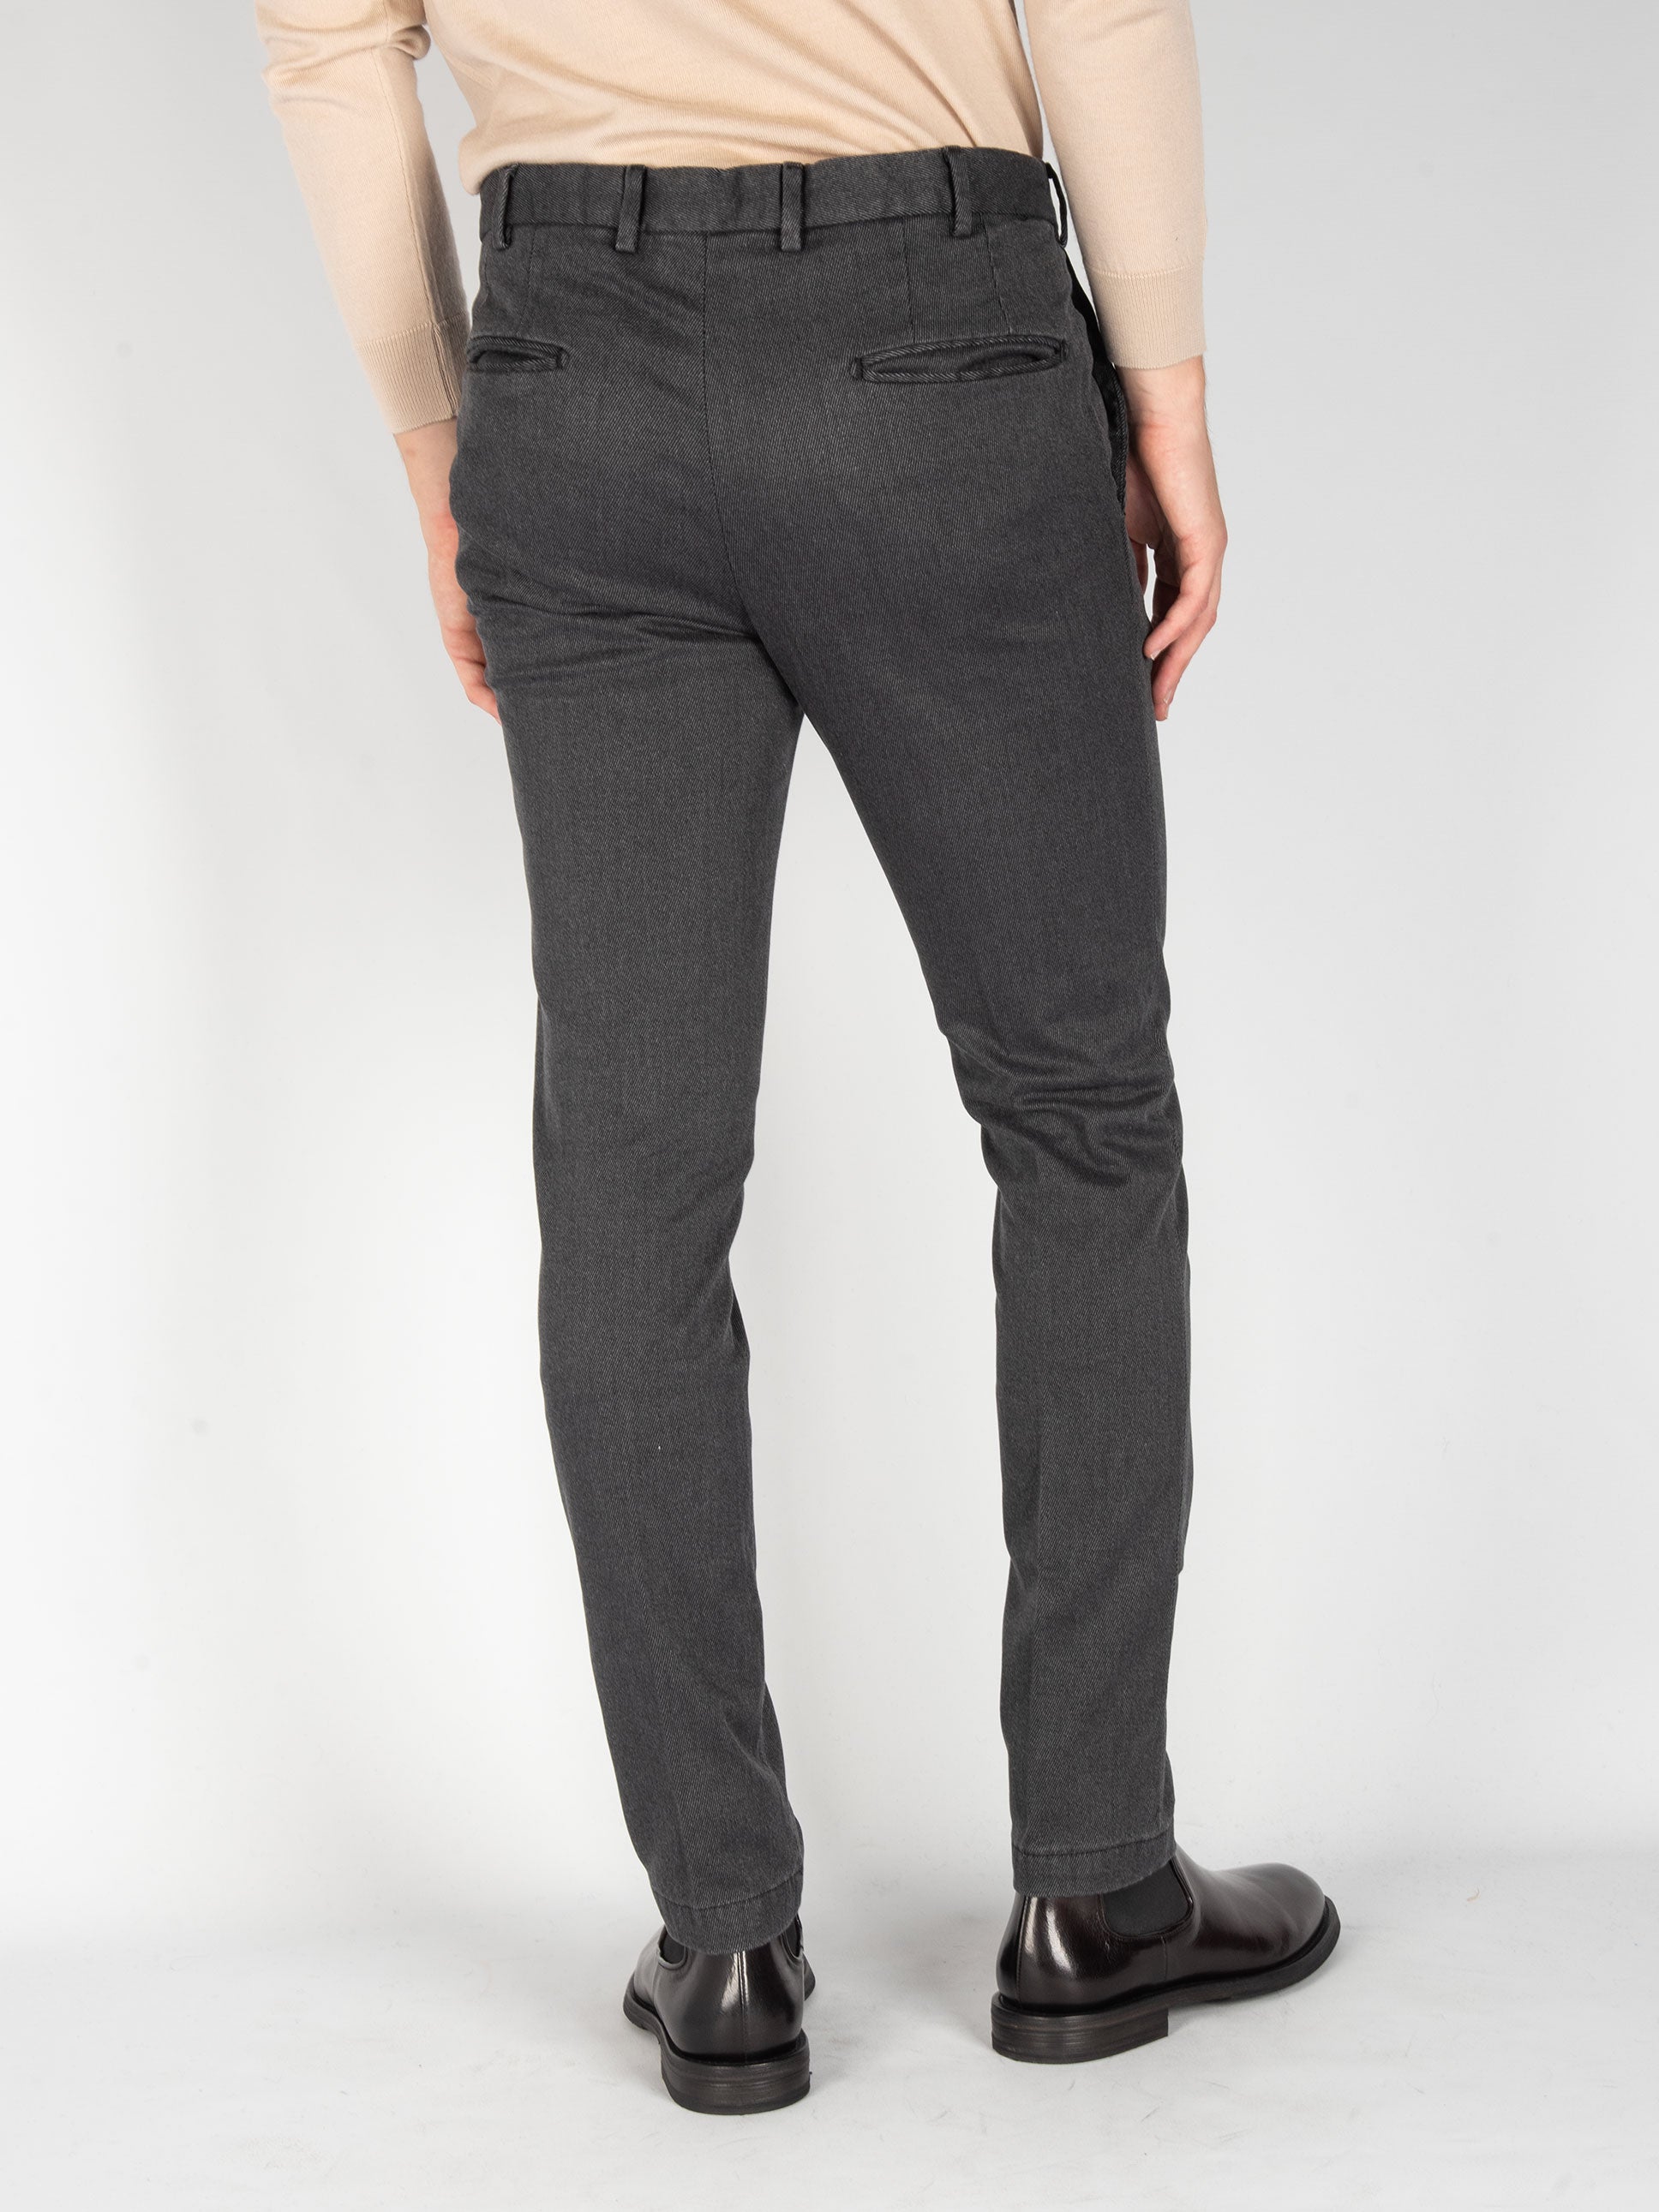 Pantalone Cotone Diagonale - Nero